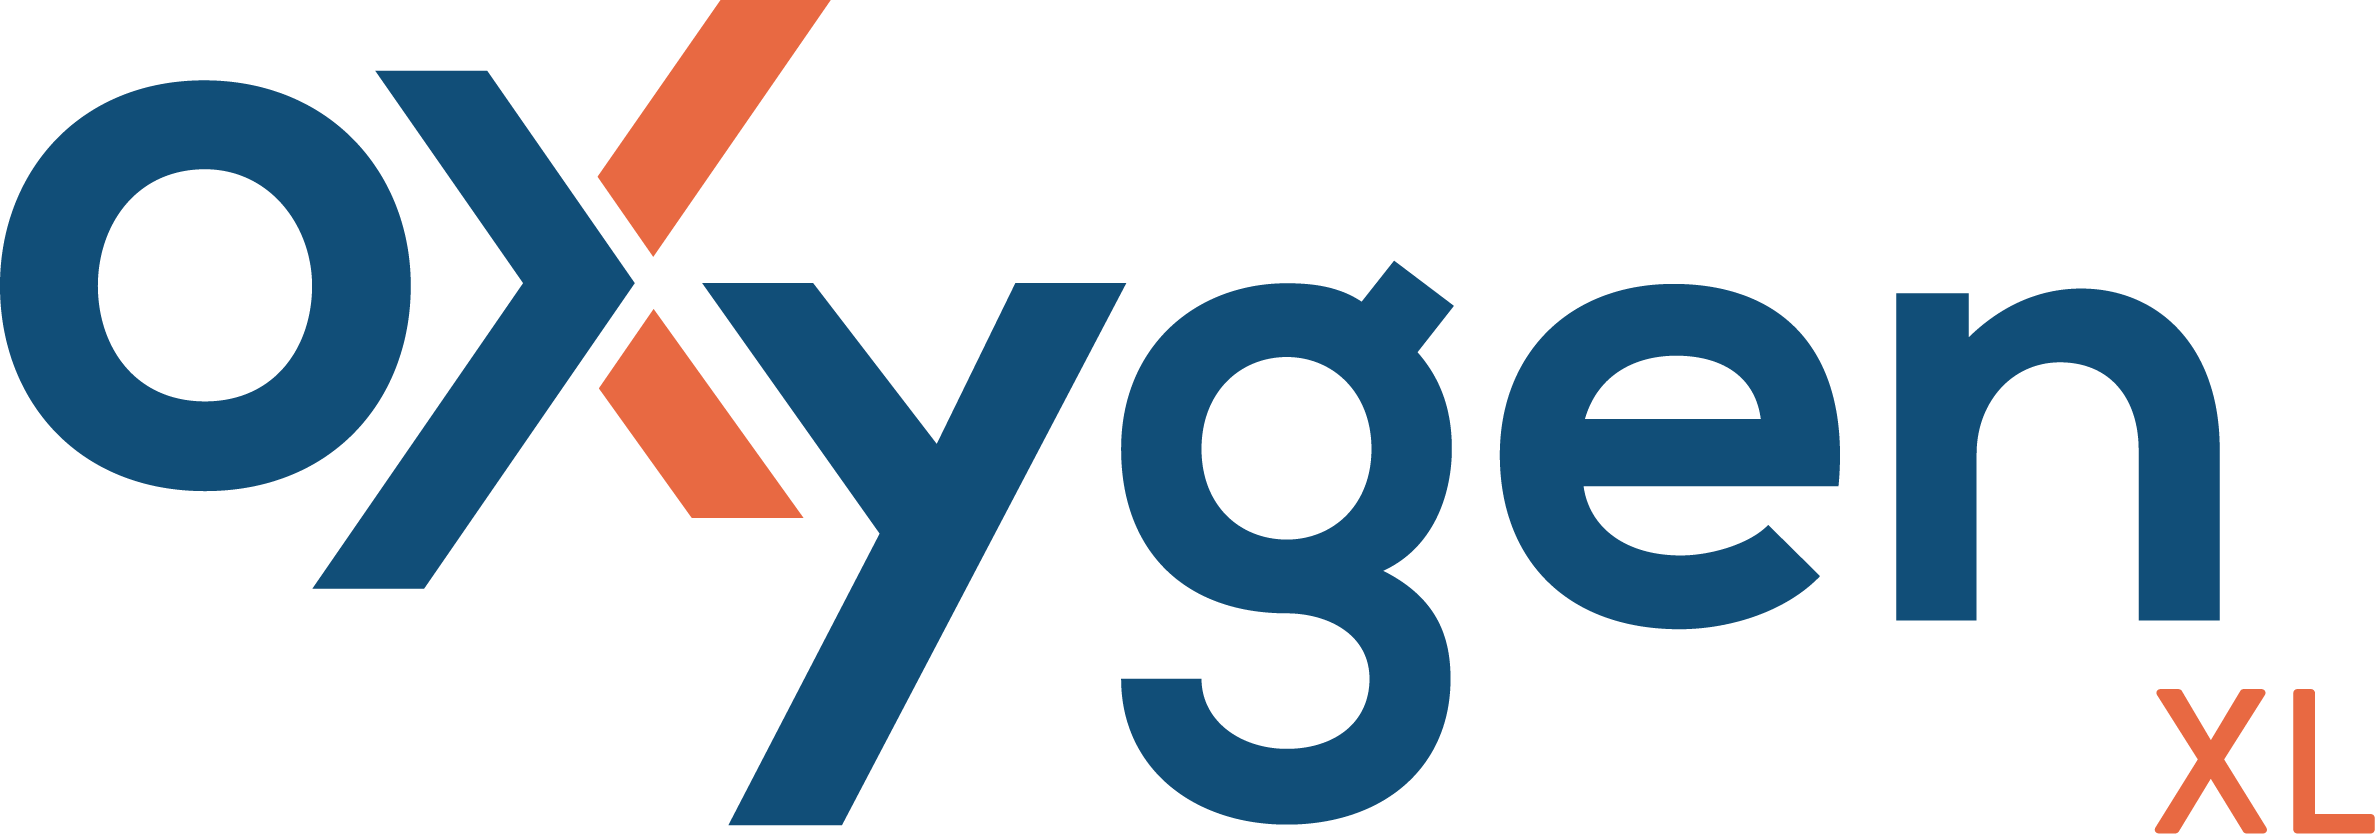 Oxygen XL logo